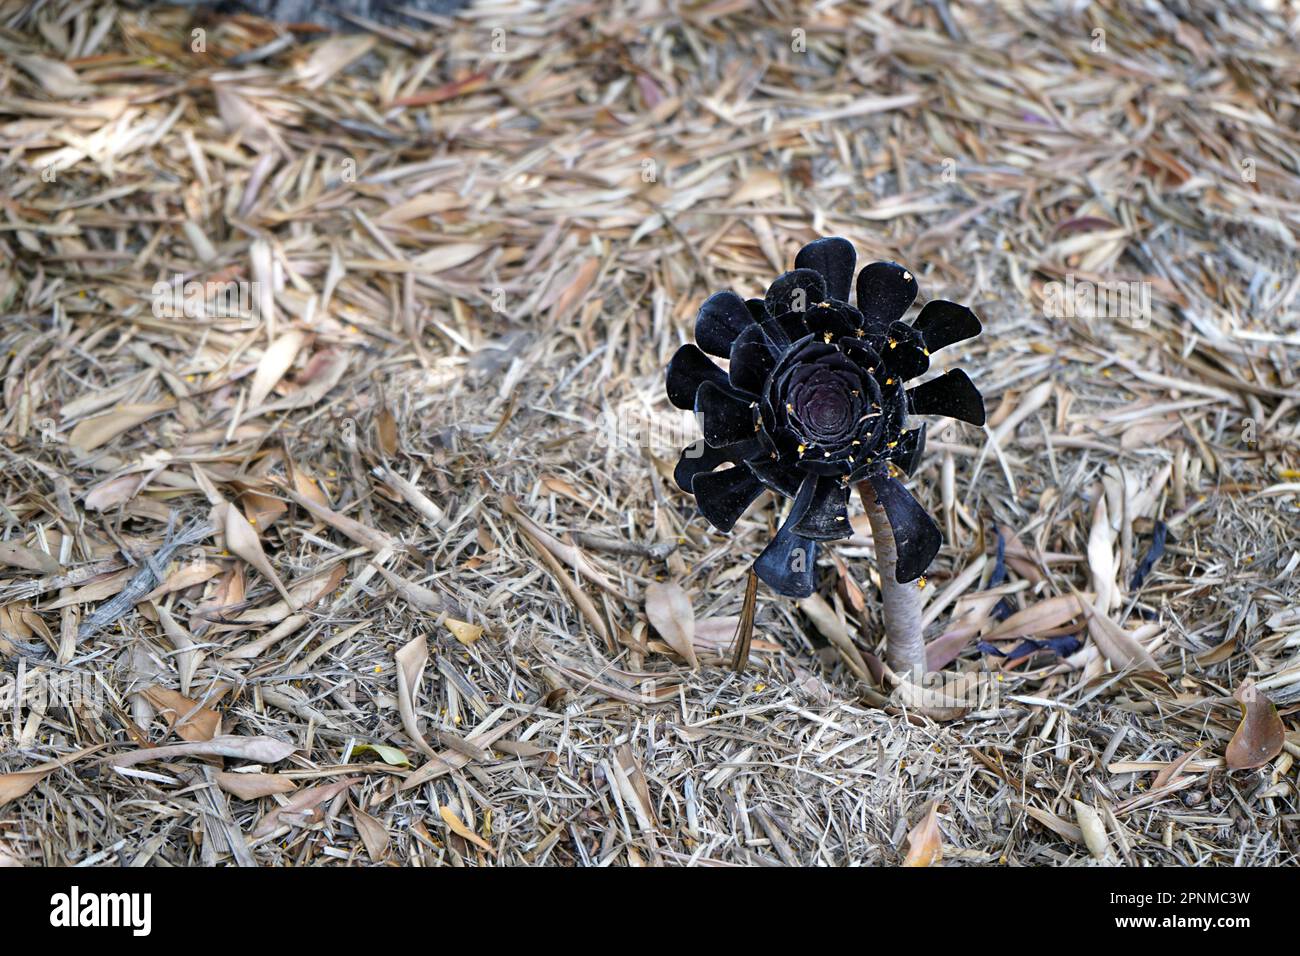 Aeonium Arboreum ‘Zwartkop’ (Black Rose). Stock Photo